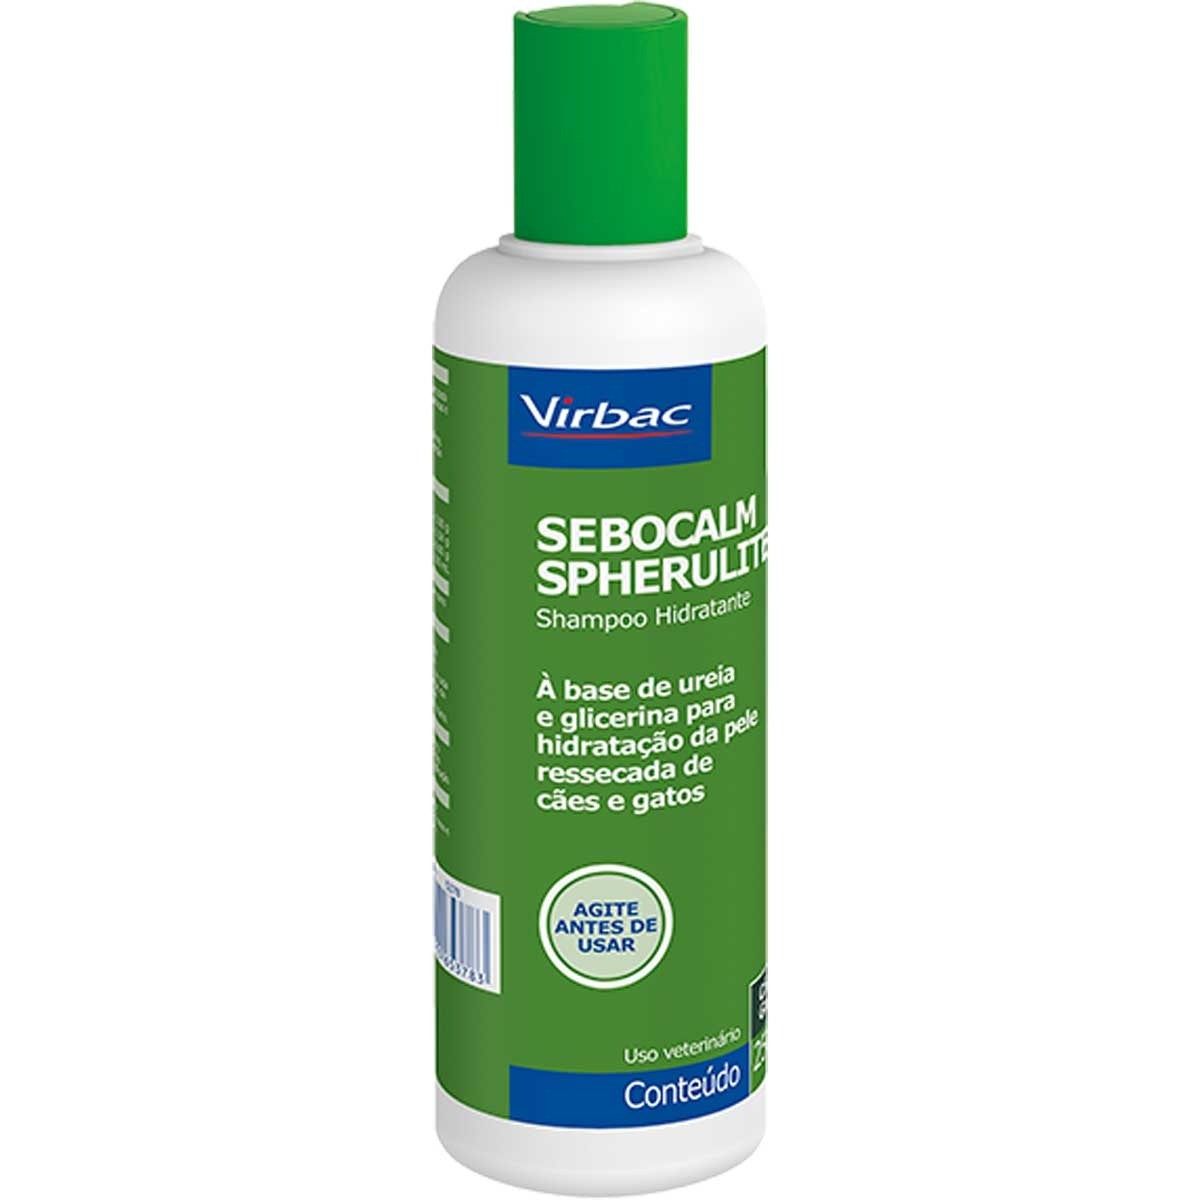 Sebocalm Spherulites Shampoo Virbac para Cães e Gatos 250 ml